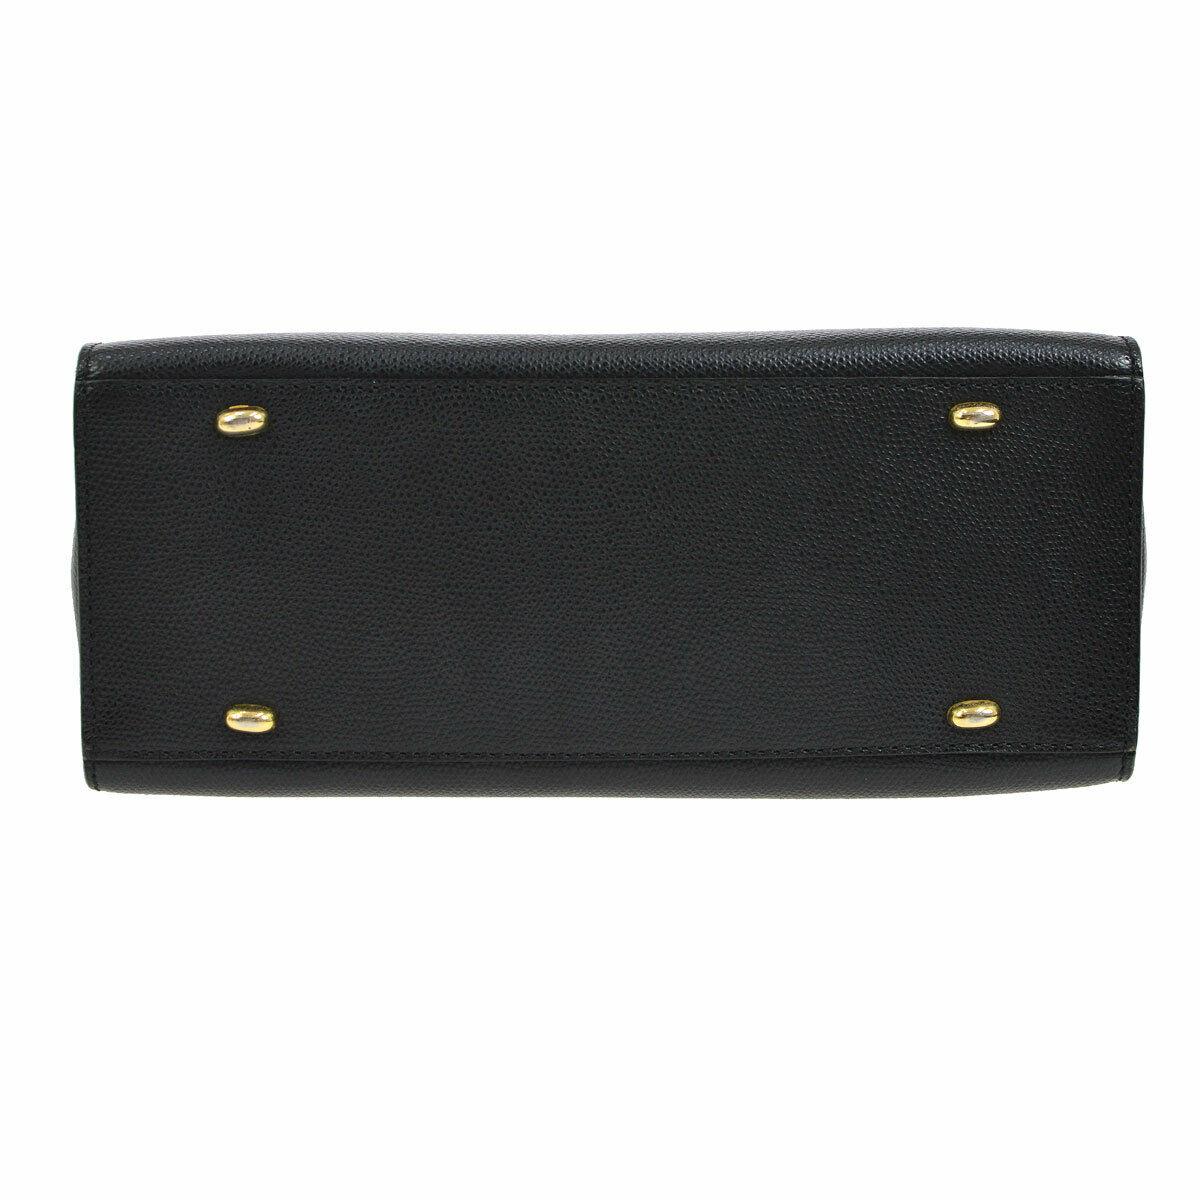 Black Celine Leather Gold Kelly Style Evening Top Handle Satchel Shoulder Flap Bag